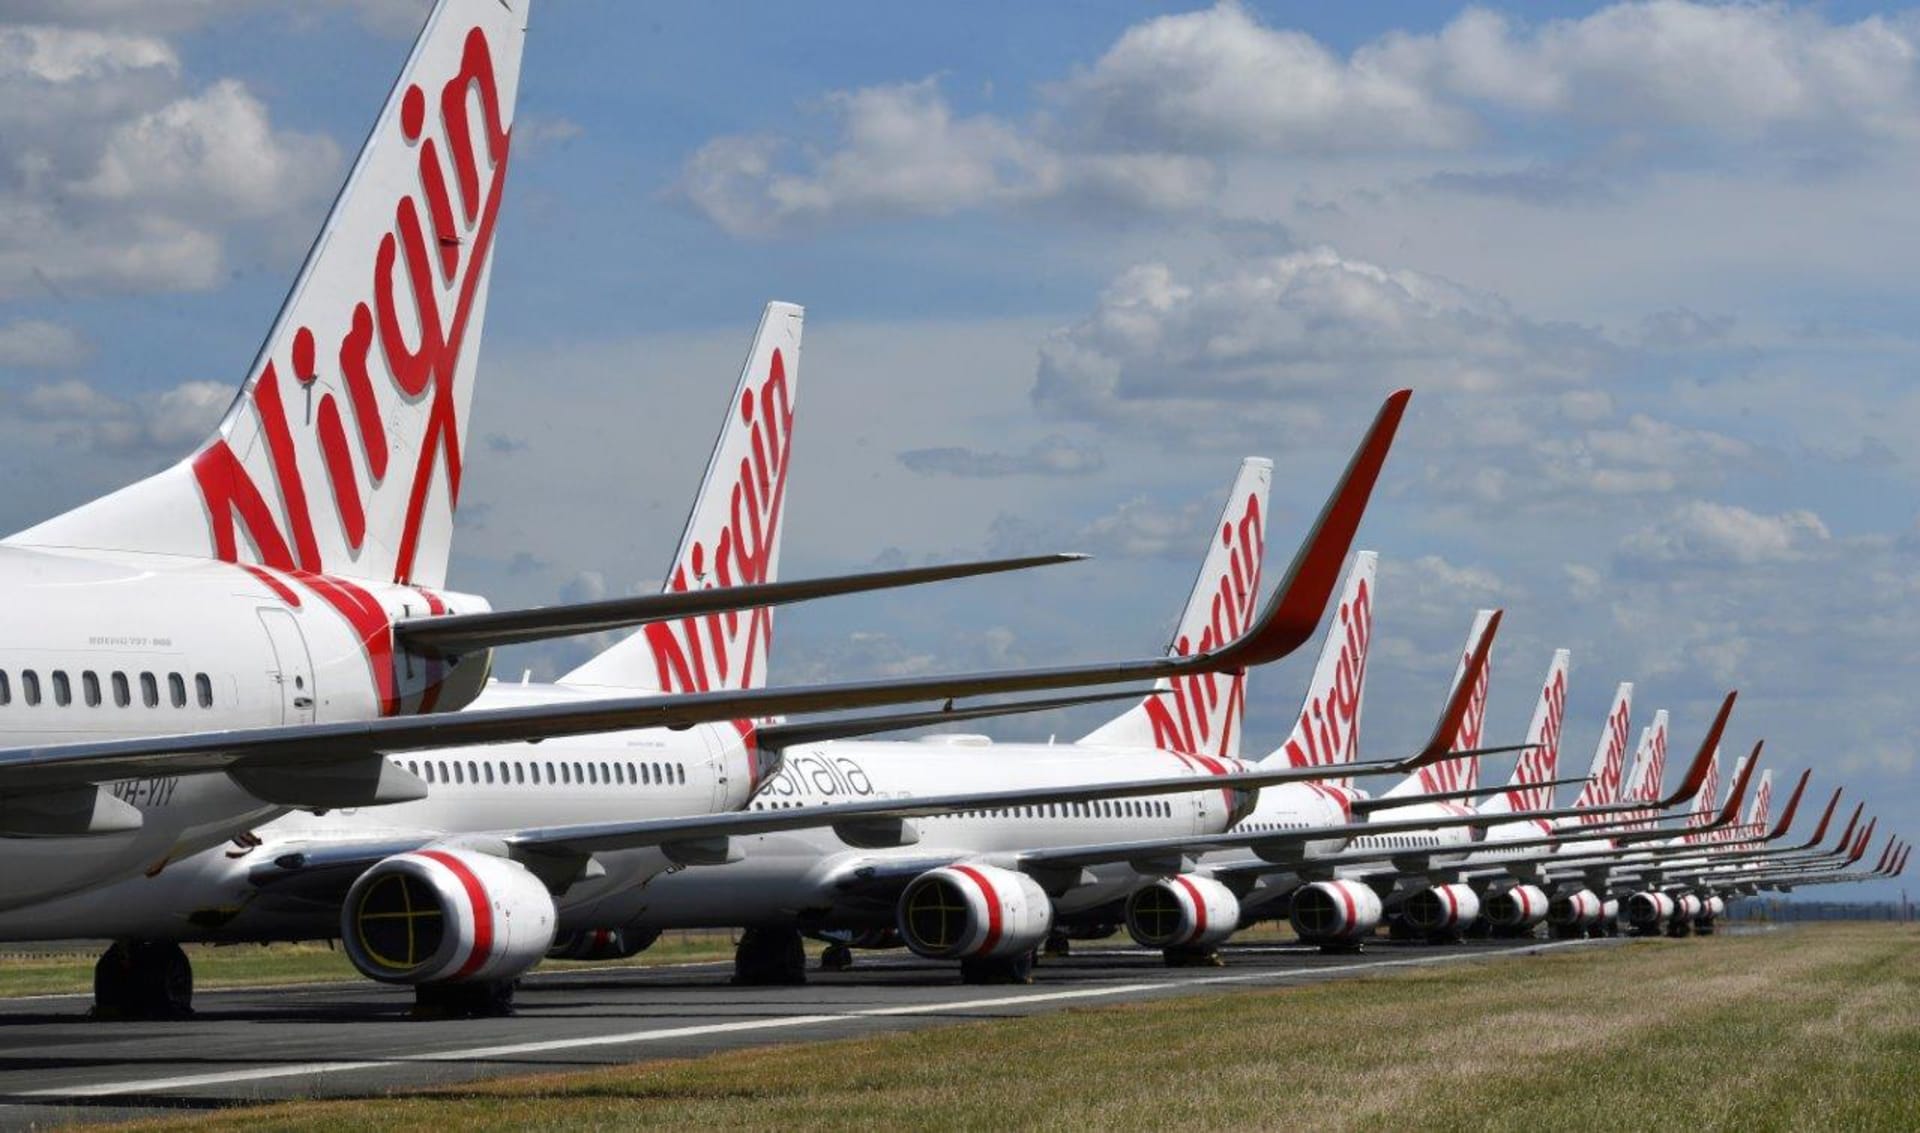 Letadla společnosti Virgin Australia zaparkovaná na letišti v Brisbane